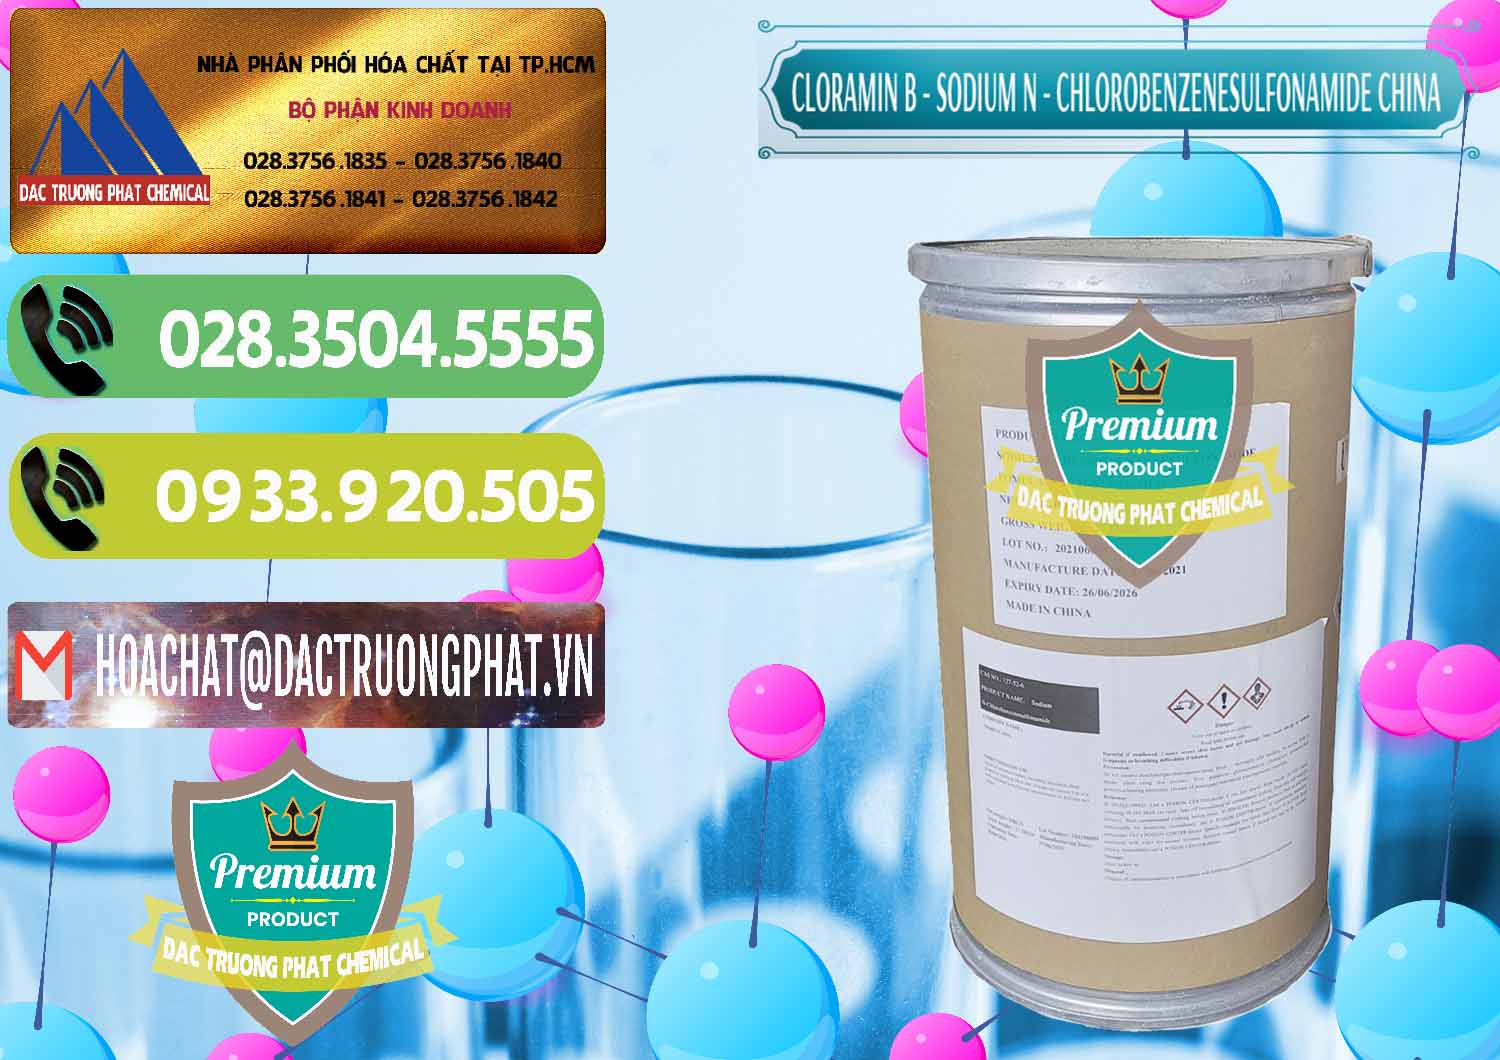 Cty bán ( cung cấp ) Cloramin B Khử Trùng, Diệt Khuẩn Trung Quốc China - 0298 - Cty phân phối & kinh doanh hóa chất tại TP.HCM - hoachatmientay.vn